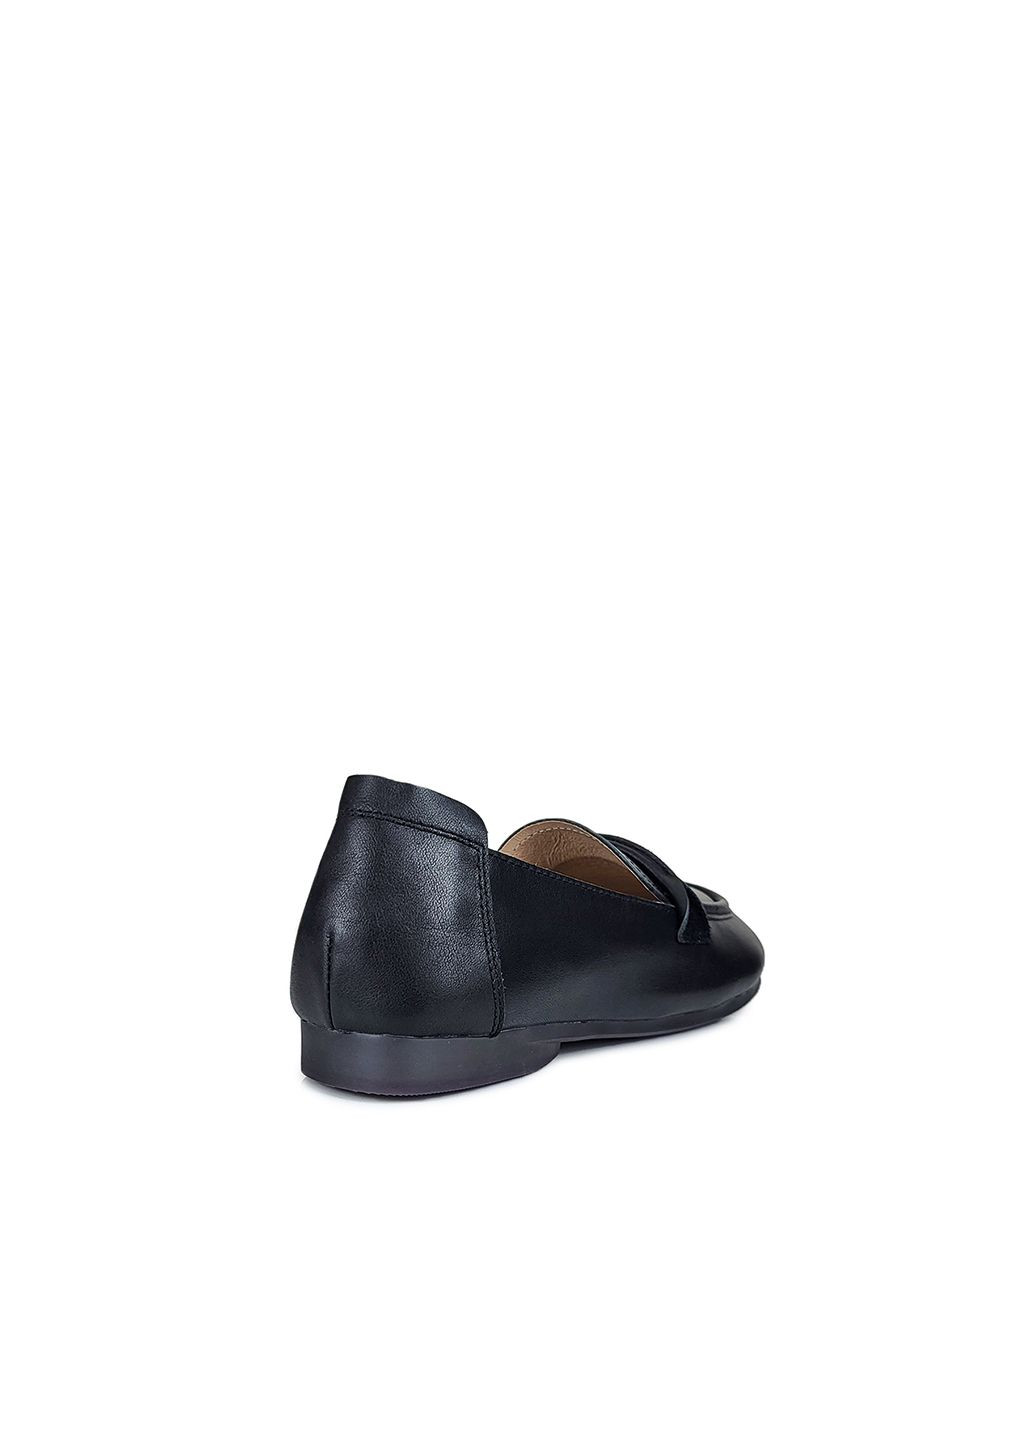 Кожаные женские туфли без каблука черные,,SL1618-1-1 черные,36 Berkonty без каблука